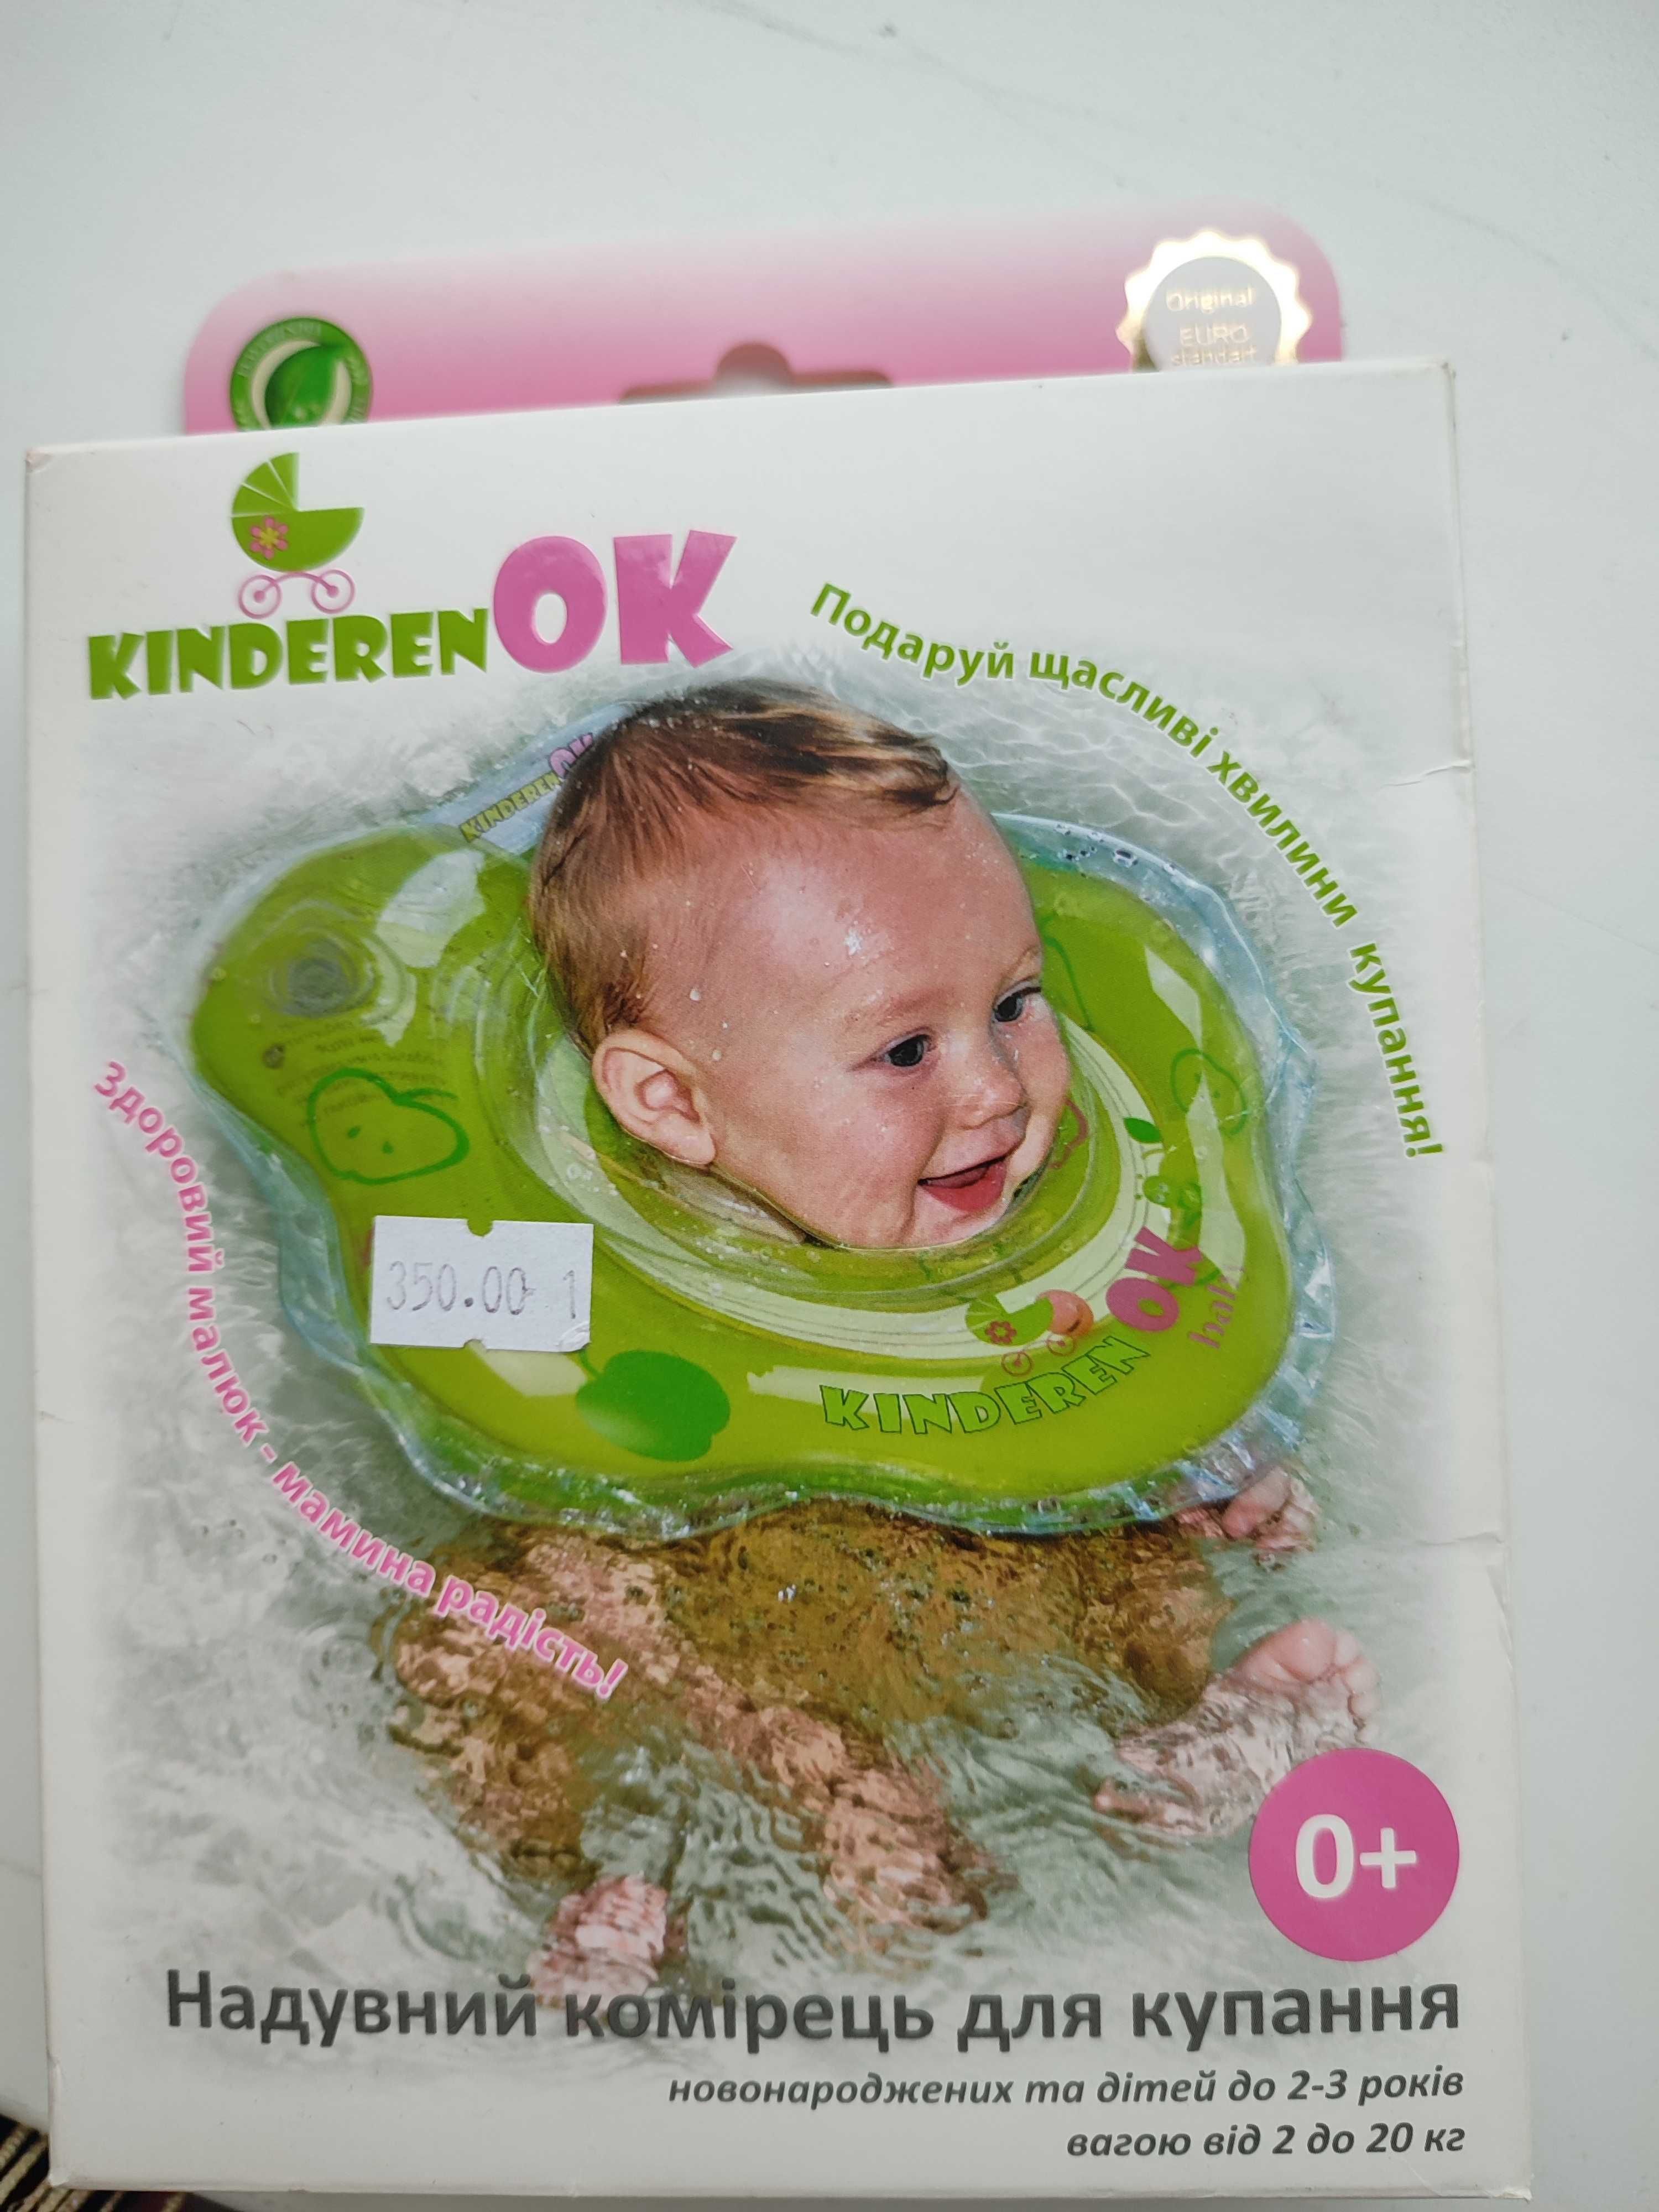 Надувний комірець для купання немовлят